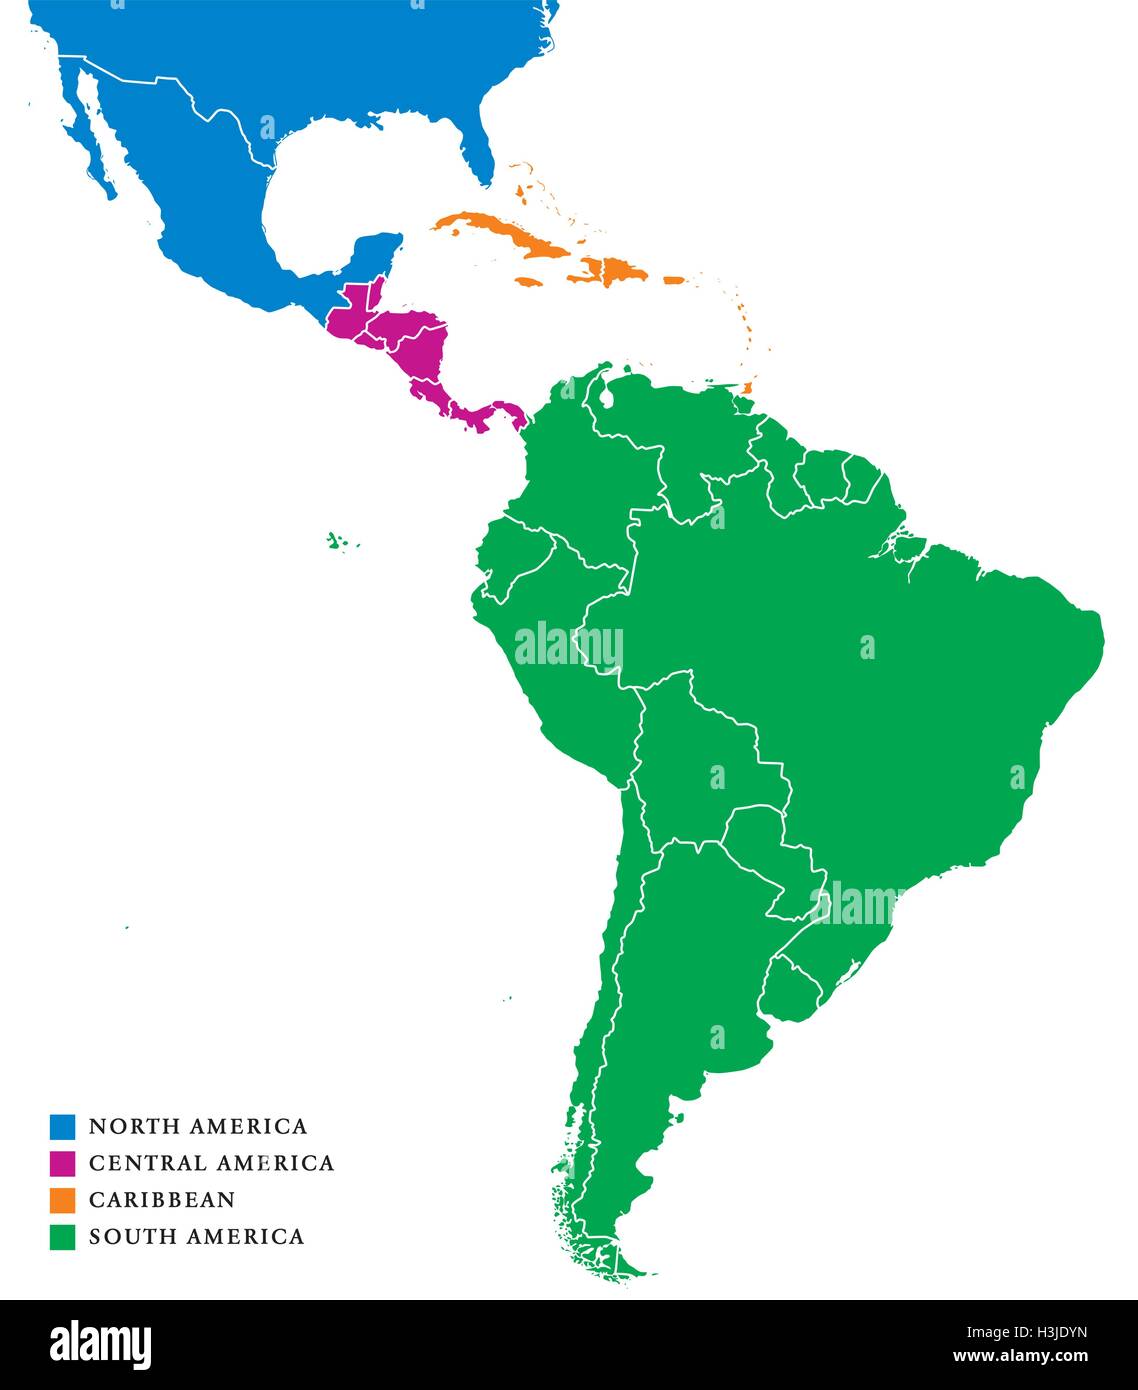 Sous-régions de l'Amérique latine site. Les sous-régions dans les Caraïbes, en Afrique du Nord, en Amérique centrale et du Sud dans des couleurs différentes et des frontières. Vector Illustration de Vecteur